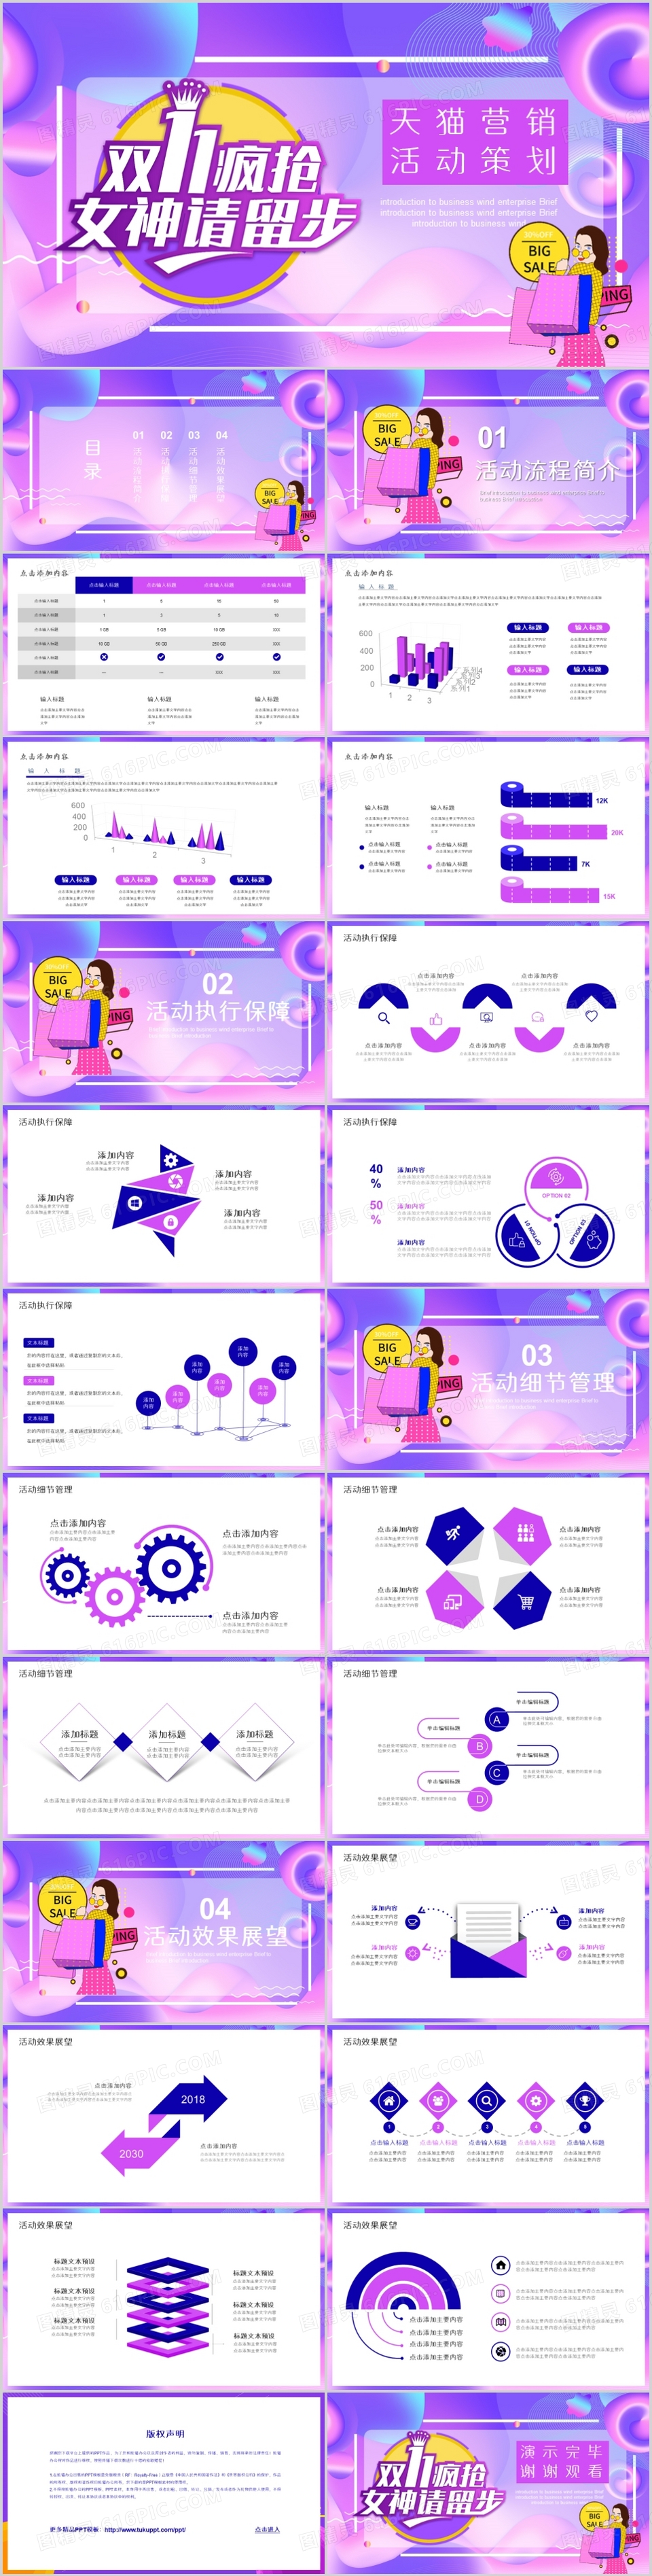 紫色天猫电商双十一营销活动策划PPT模板